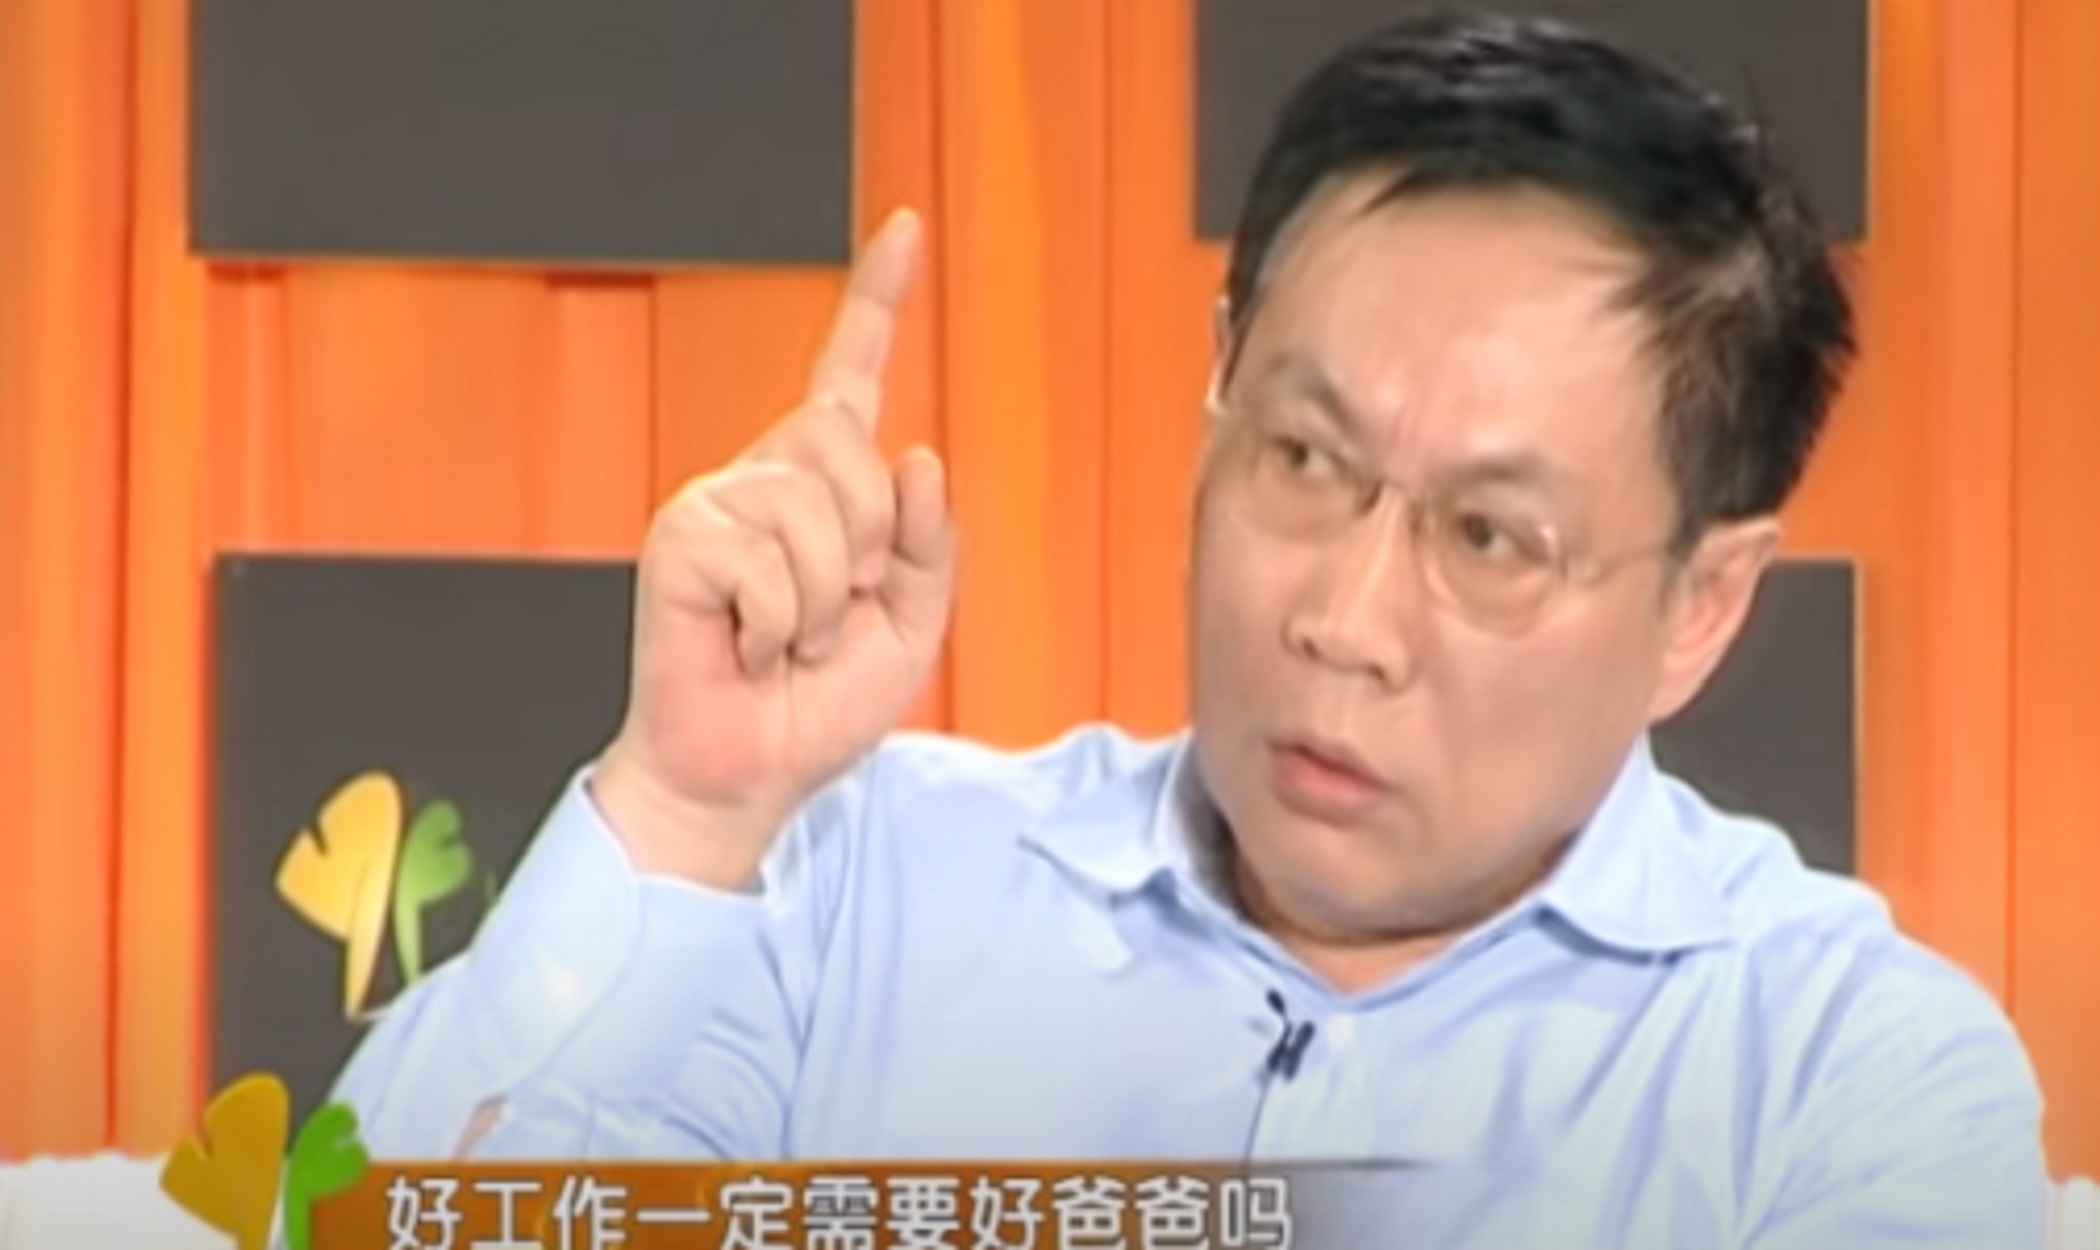 Κίνα: Σε 18 χρόνια κάθειρξης για διαφθορά ο μεγιστάνας Ρεν Τσικιάνγκ – Αποκάλεσε “κλόουν” τον Σι Τζινπίγκ